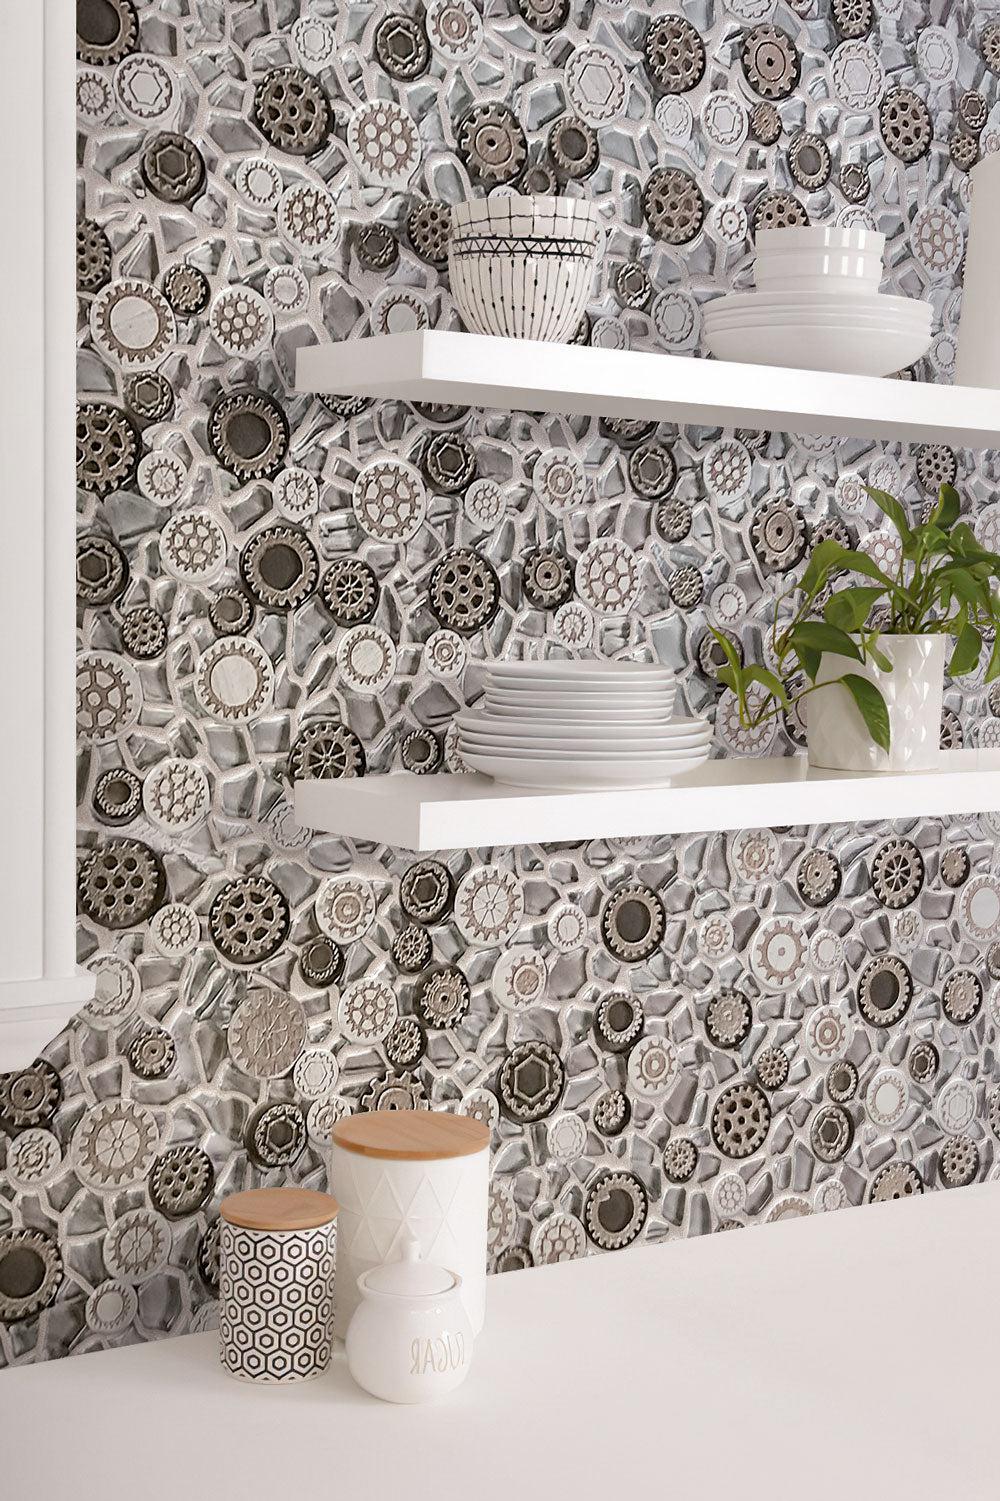 Steampunk glass tile kitchen backsplash with floating shelves